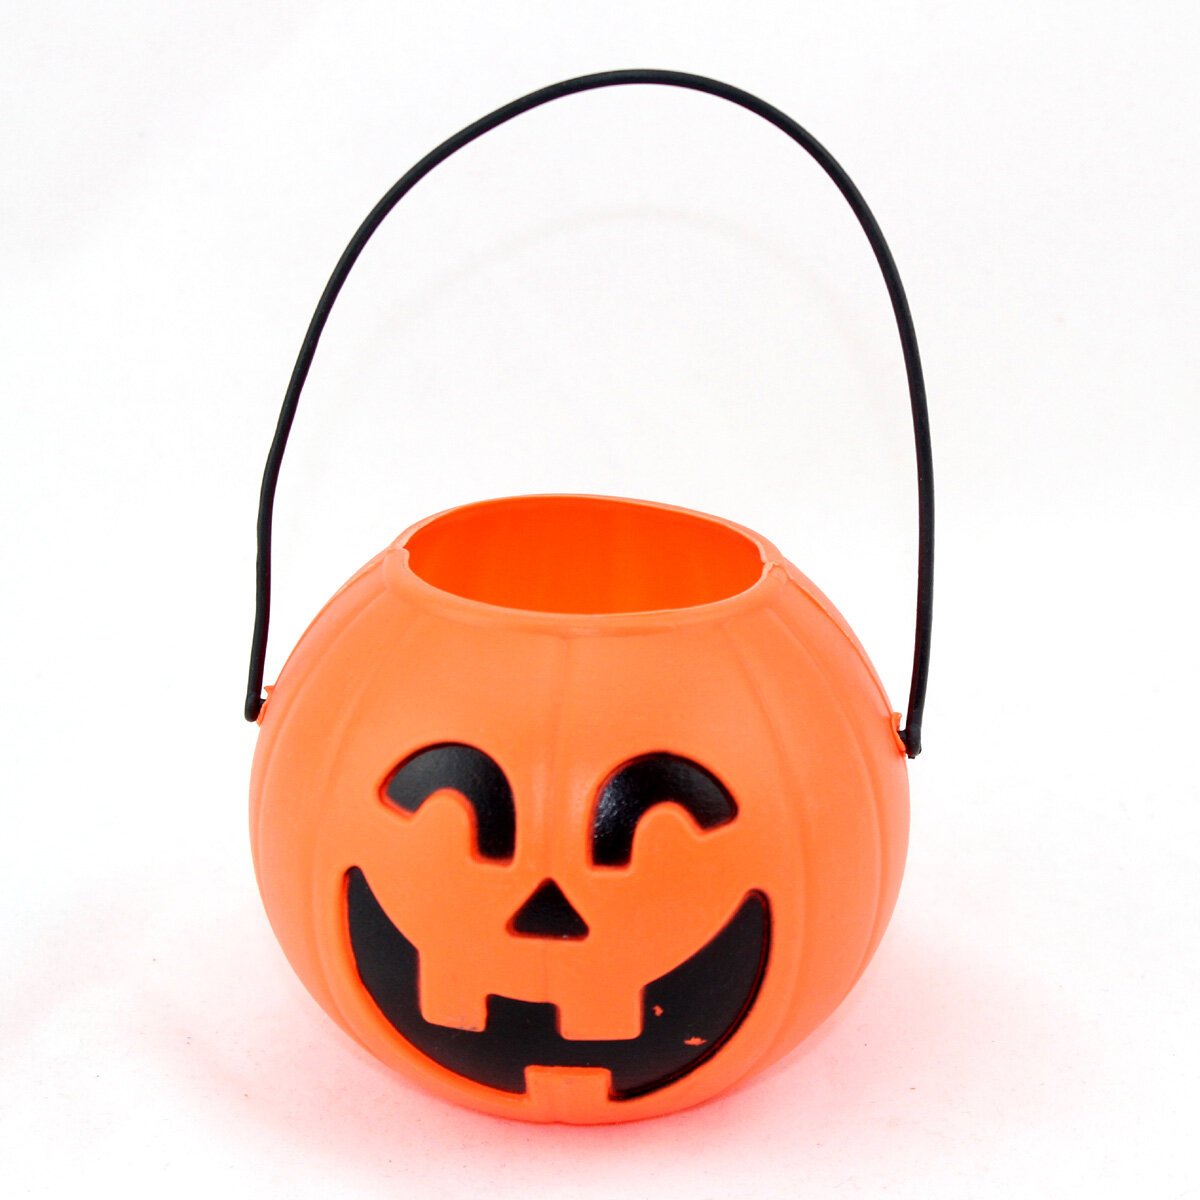 Giỏ bí ngô haloween 1-4 giỏ/ giỏ xách bí Ngô đựng kẹo chơi hoá trang halloween